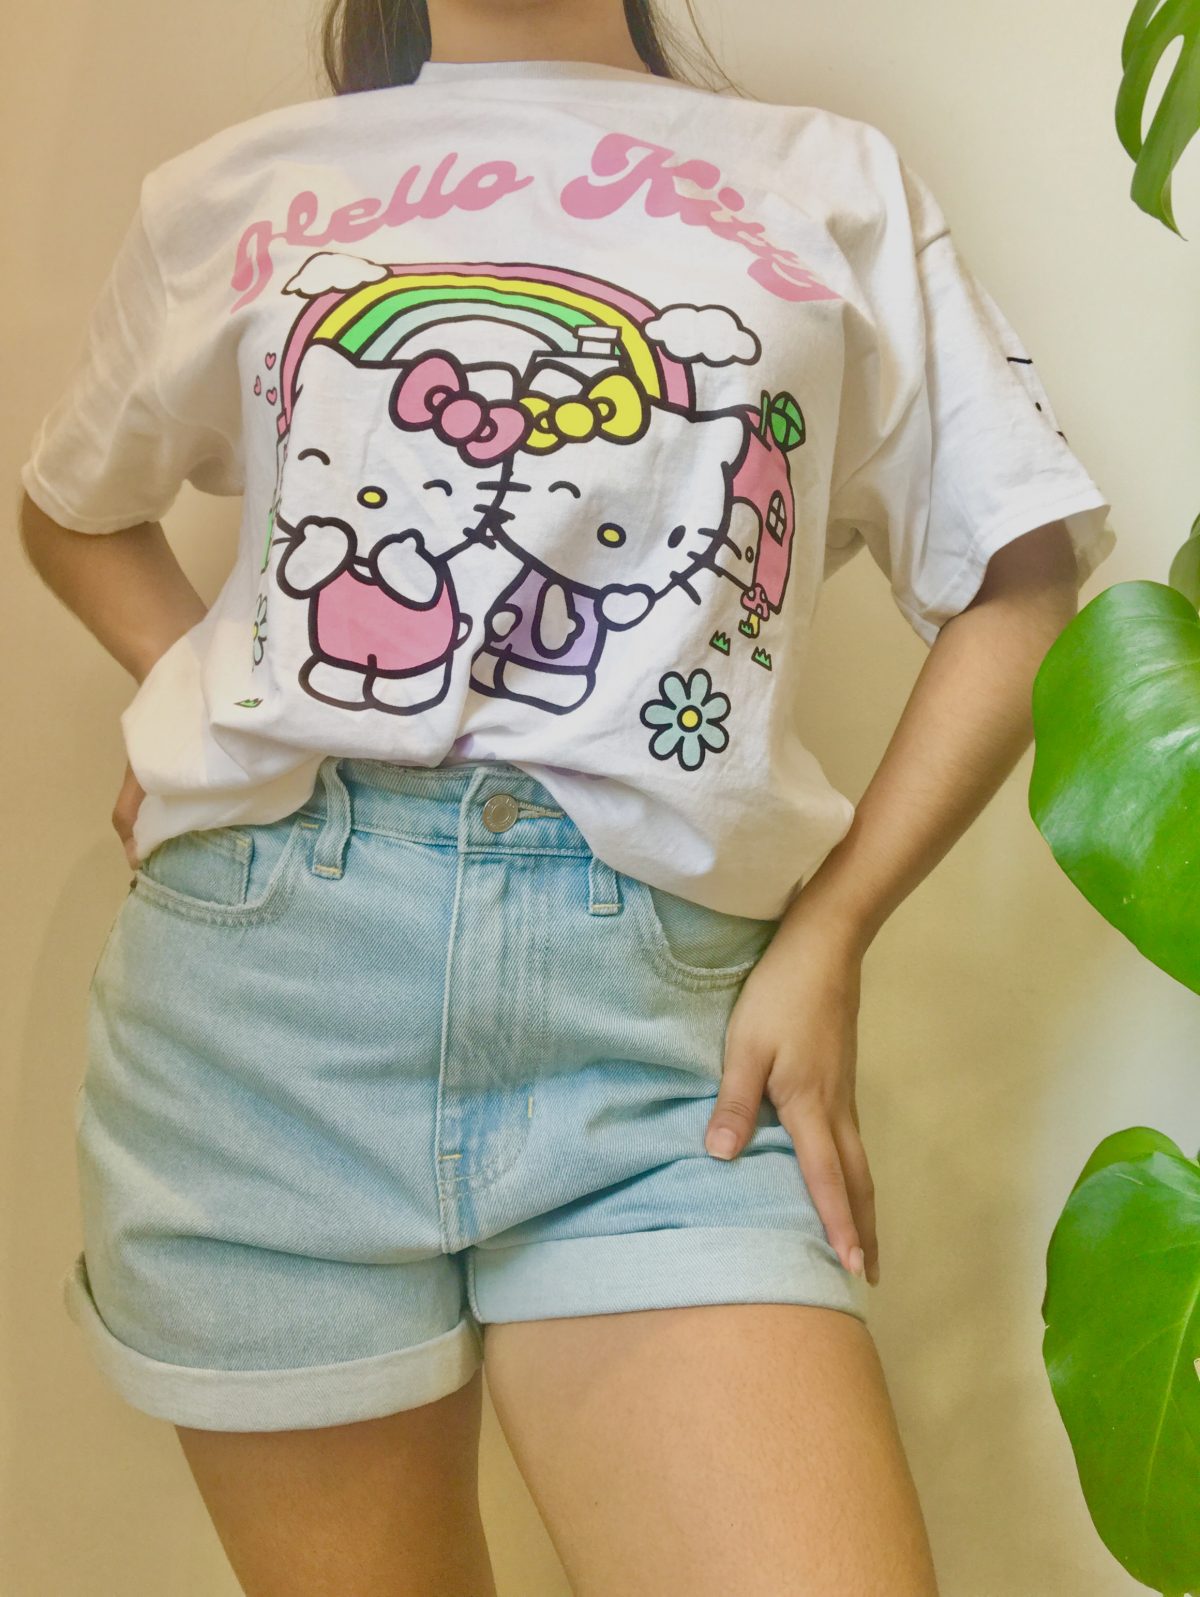 camiseta de hello kitty, ropa gallardo-ecuador